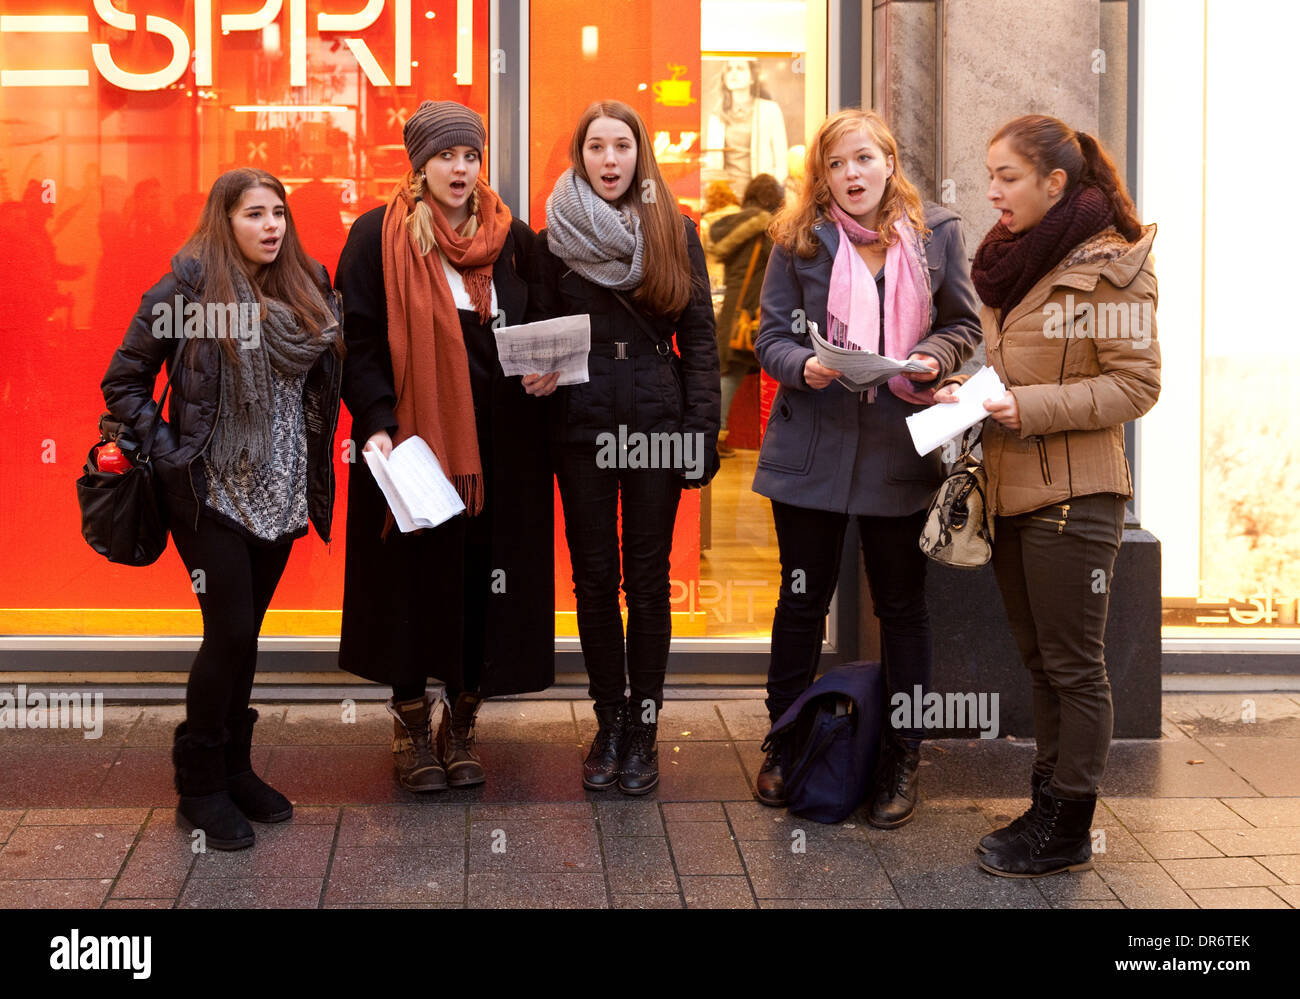 Christmas Carol Singers - fünf Frauen singen Weihnachtslieder auf der Straße, Köln (Köln), Deutschland, Europa Stockfoto